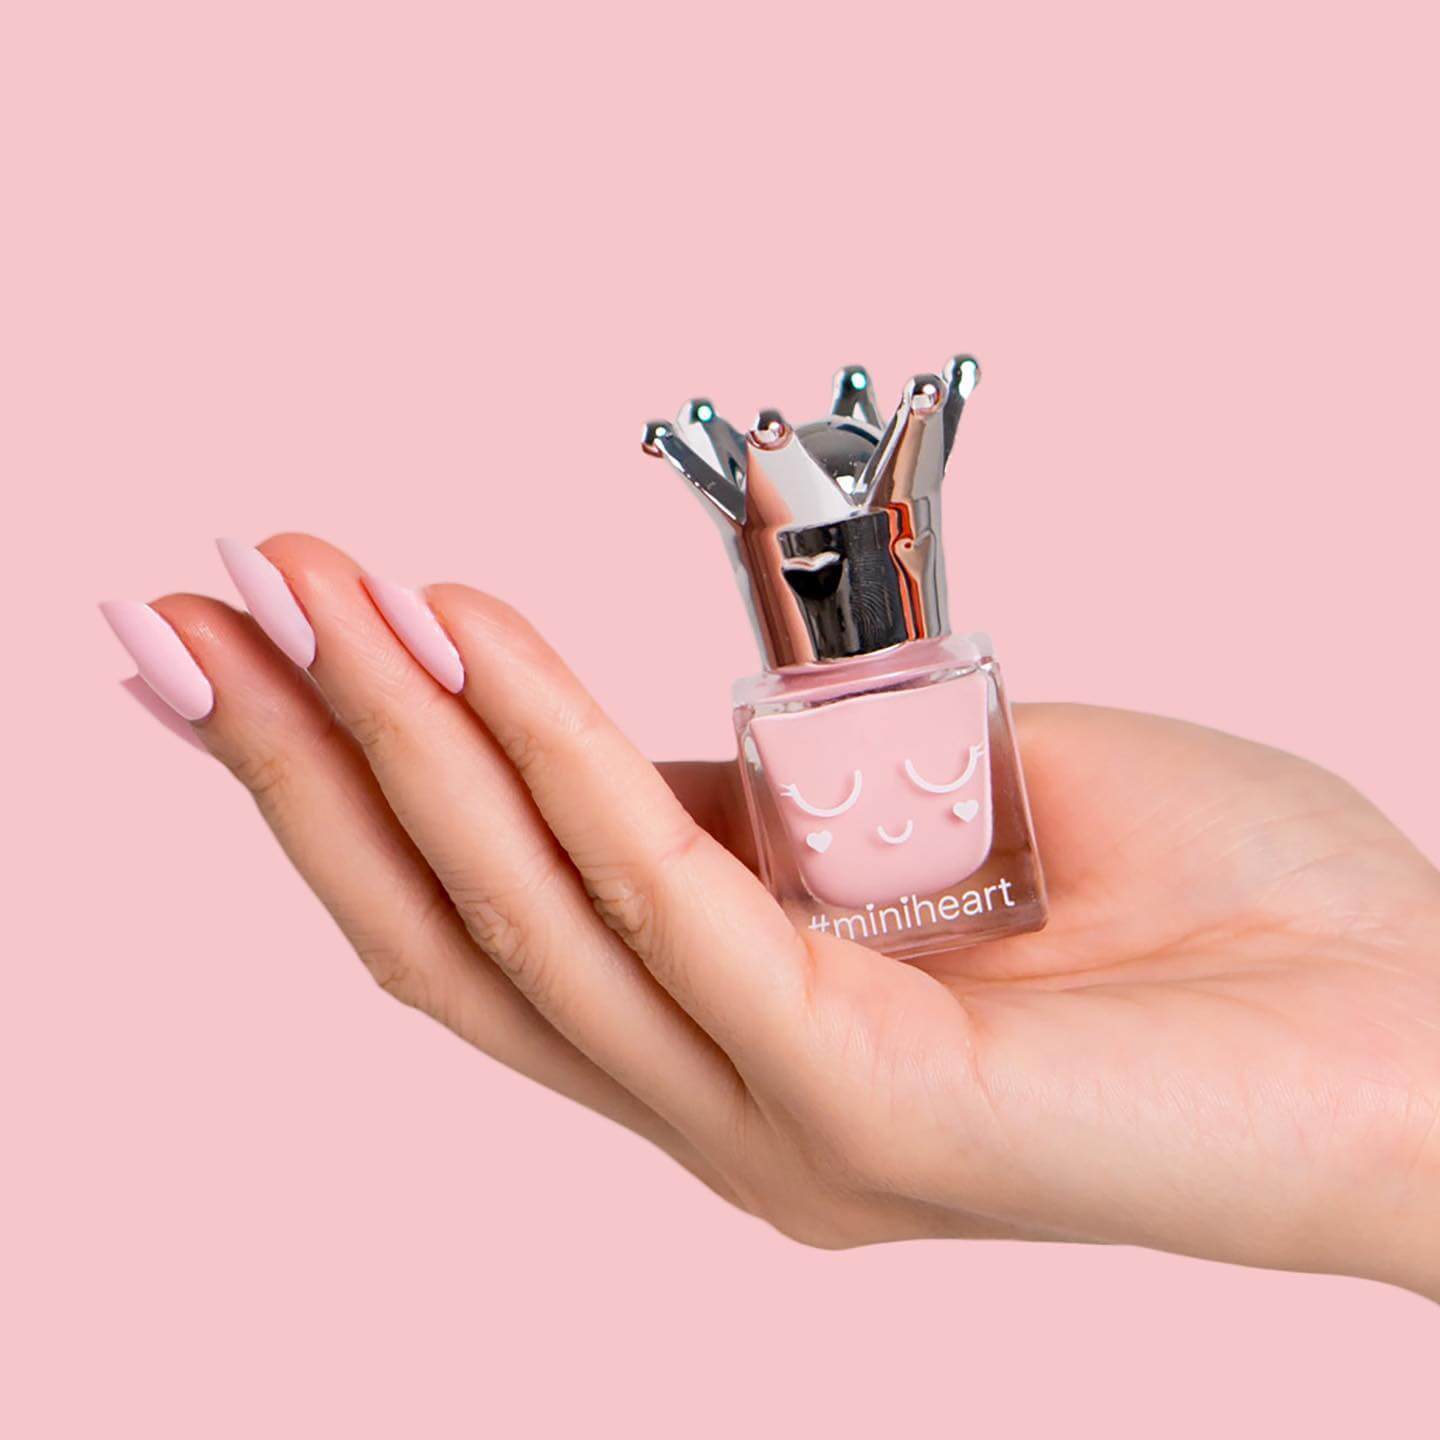 Miniheart Premium Nail Colour #PR04-Pastel Pink 11 ml (สีธรรมดา) แต่งแต้มสีเล็บของคุณได้ตามอารมณ์ ติดทน ไม่หลุดลอกเร็วจนเกินไป ทาง่ายเพียงปาดเดียวได้สีคมชัด สวยเหมือนคุณเป็นมืออาชีพ